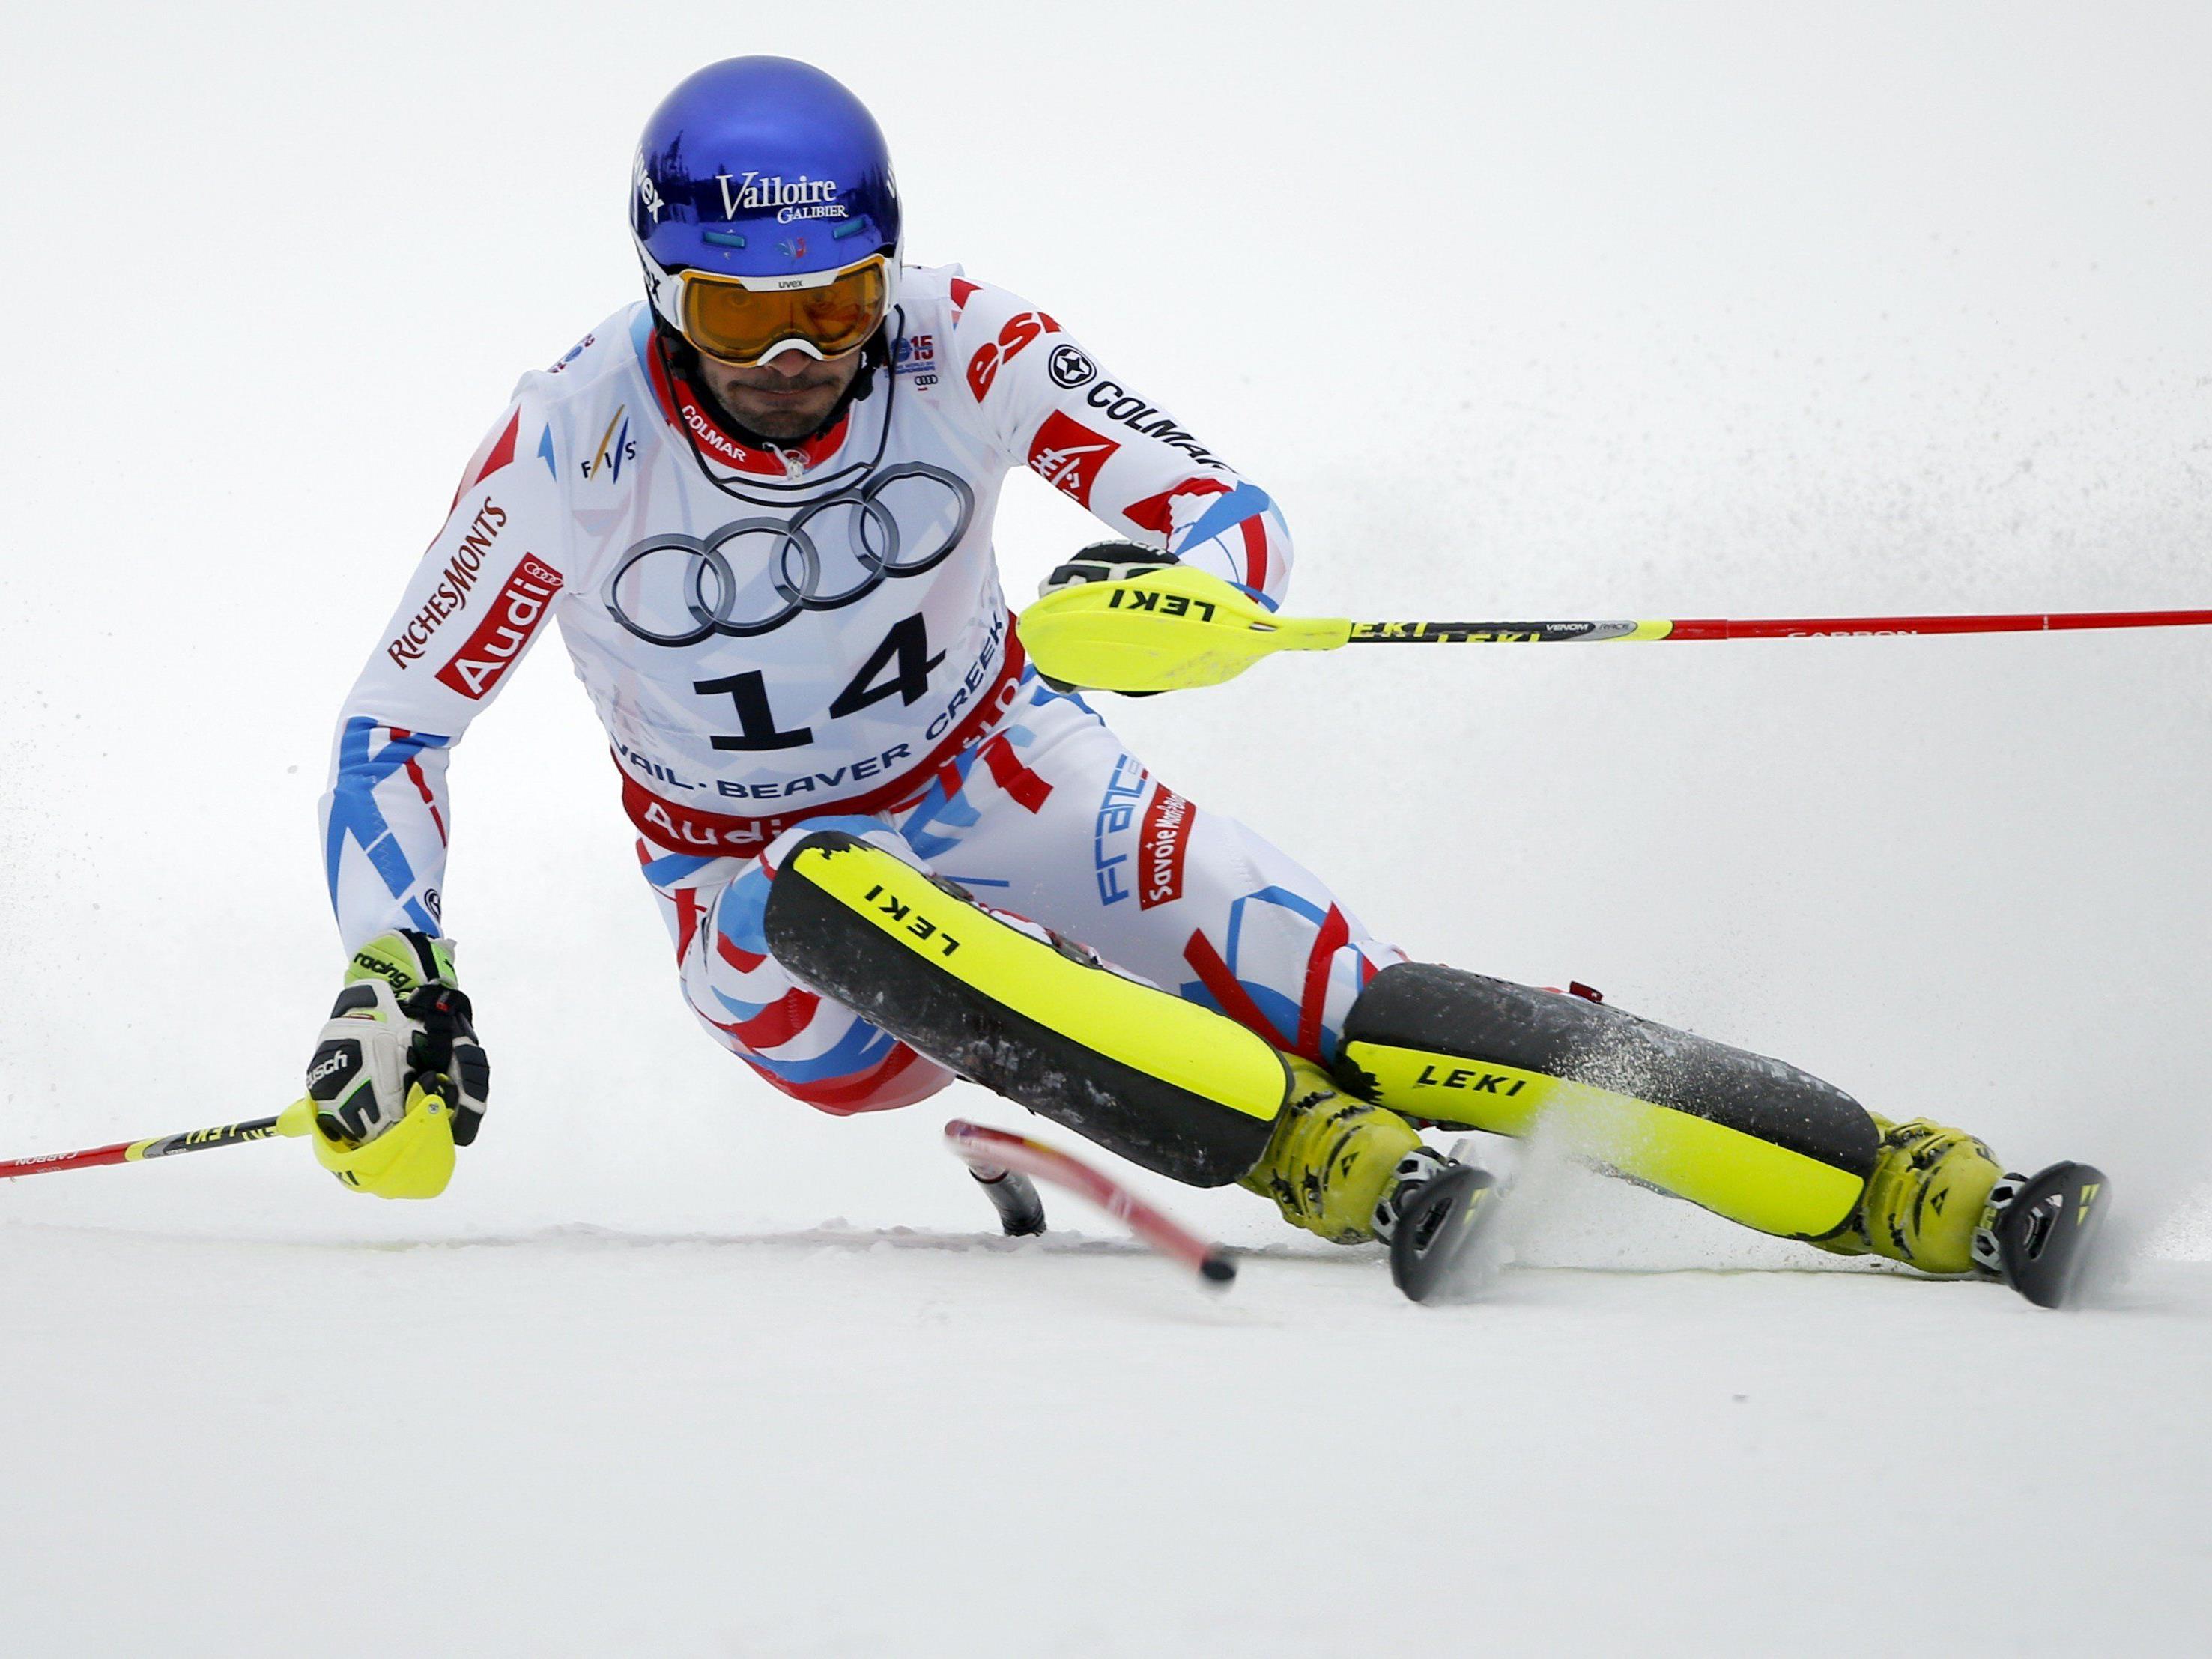 Der Franzose Grange holte sich den Titel im WM-Slalom.